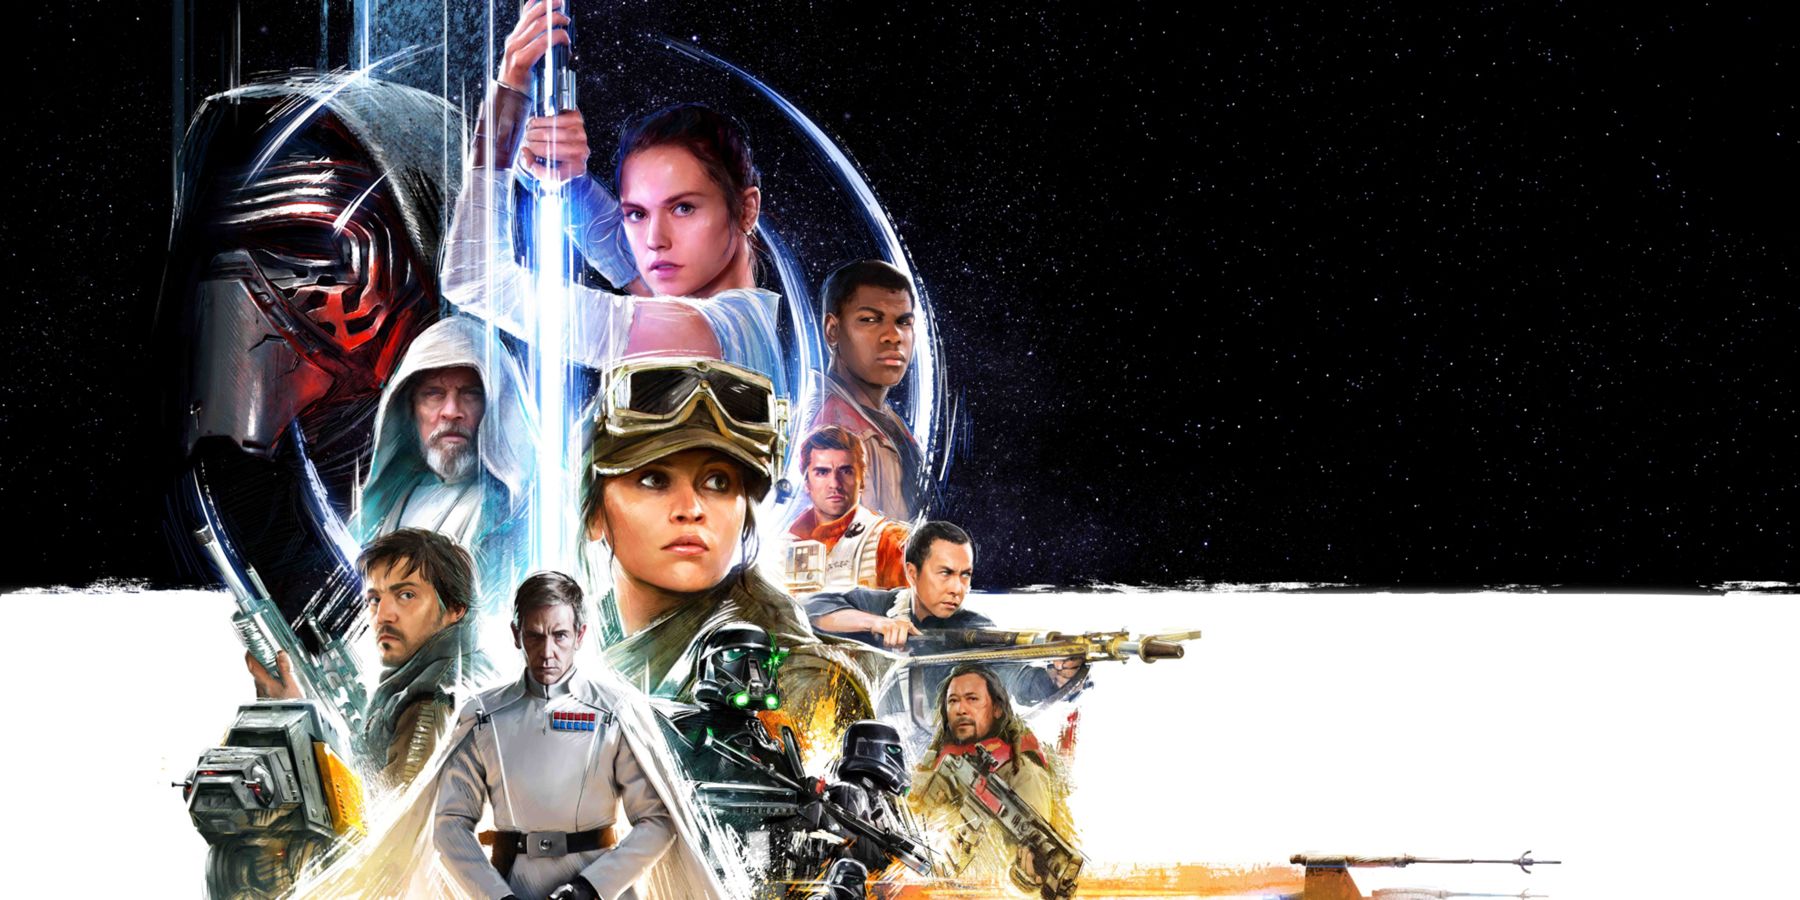 Star Wars Celebration 2016 poster header